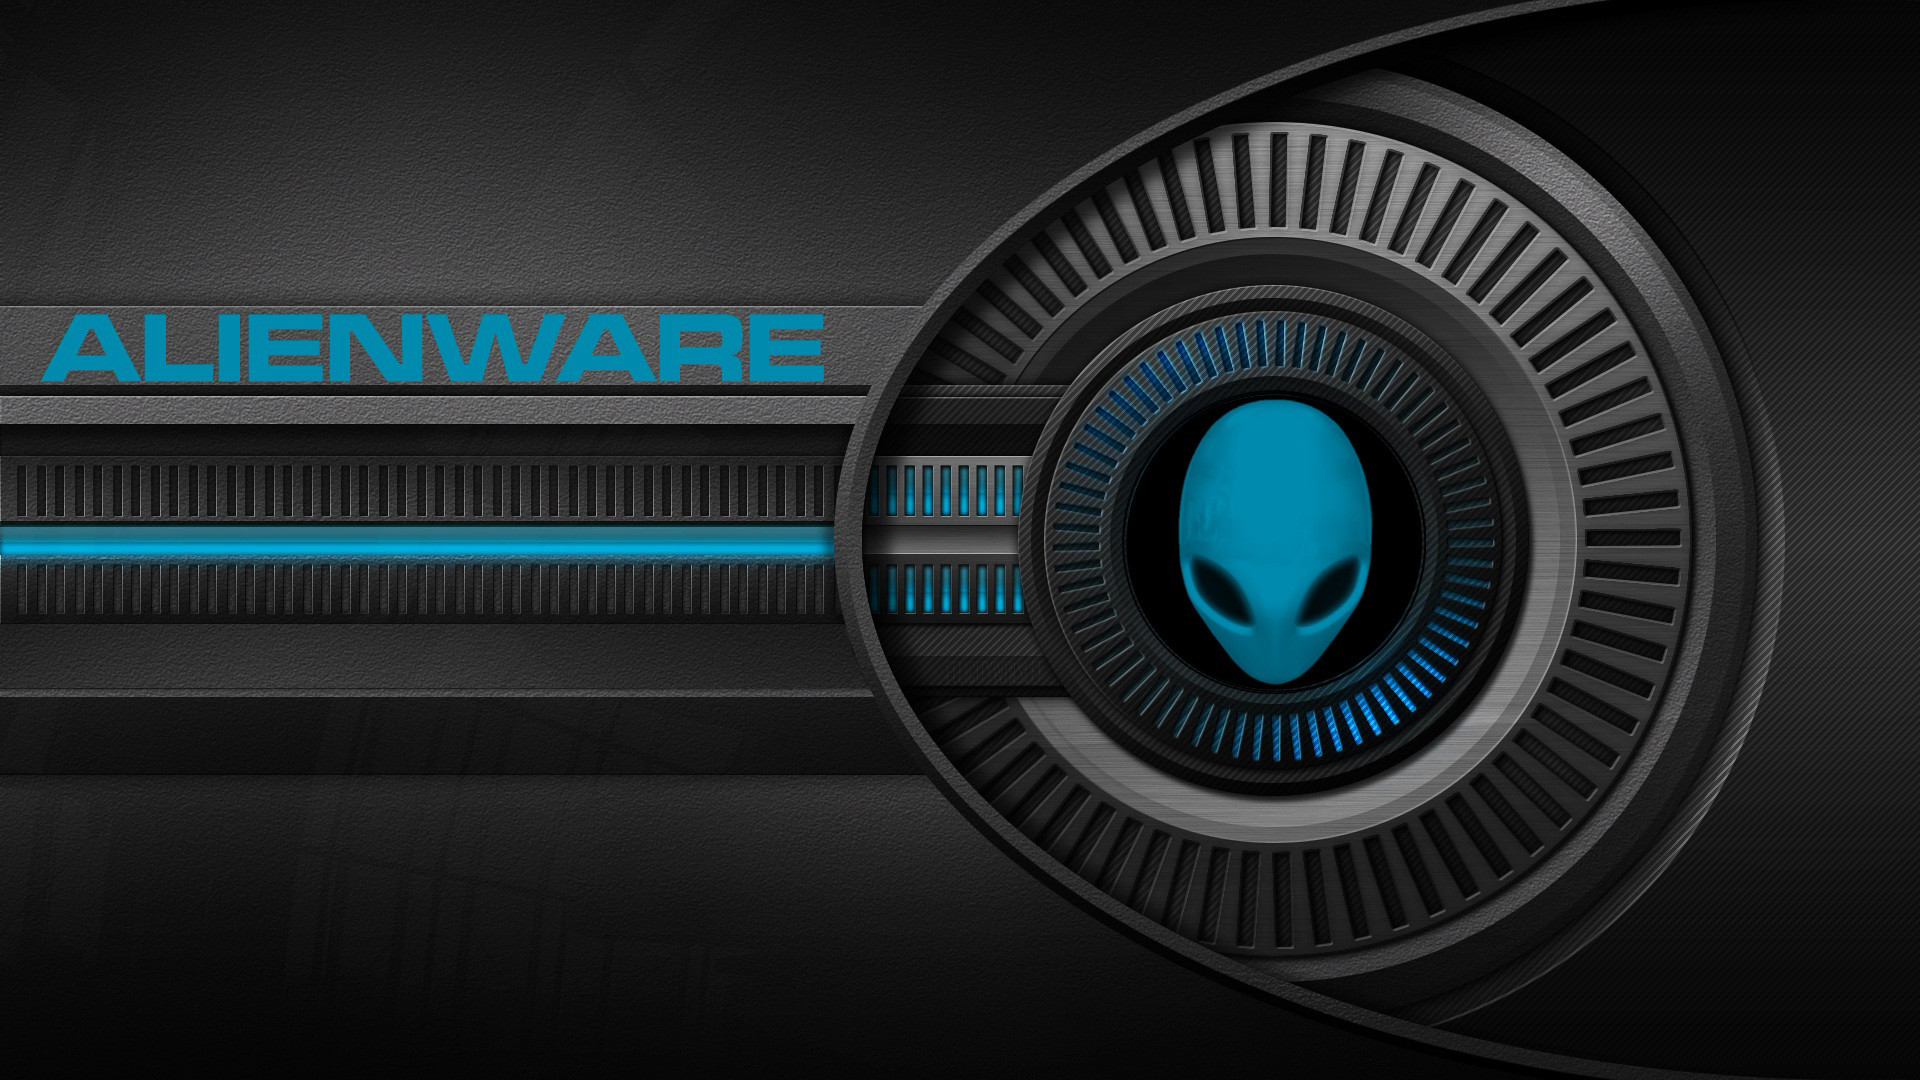 1920x1080 Alienware Red wallpaper | Alienware | Pinterest | Alienware